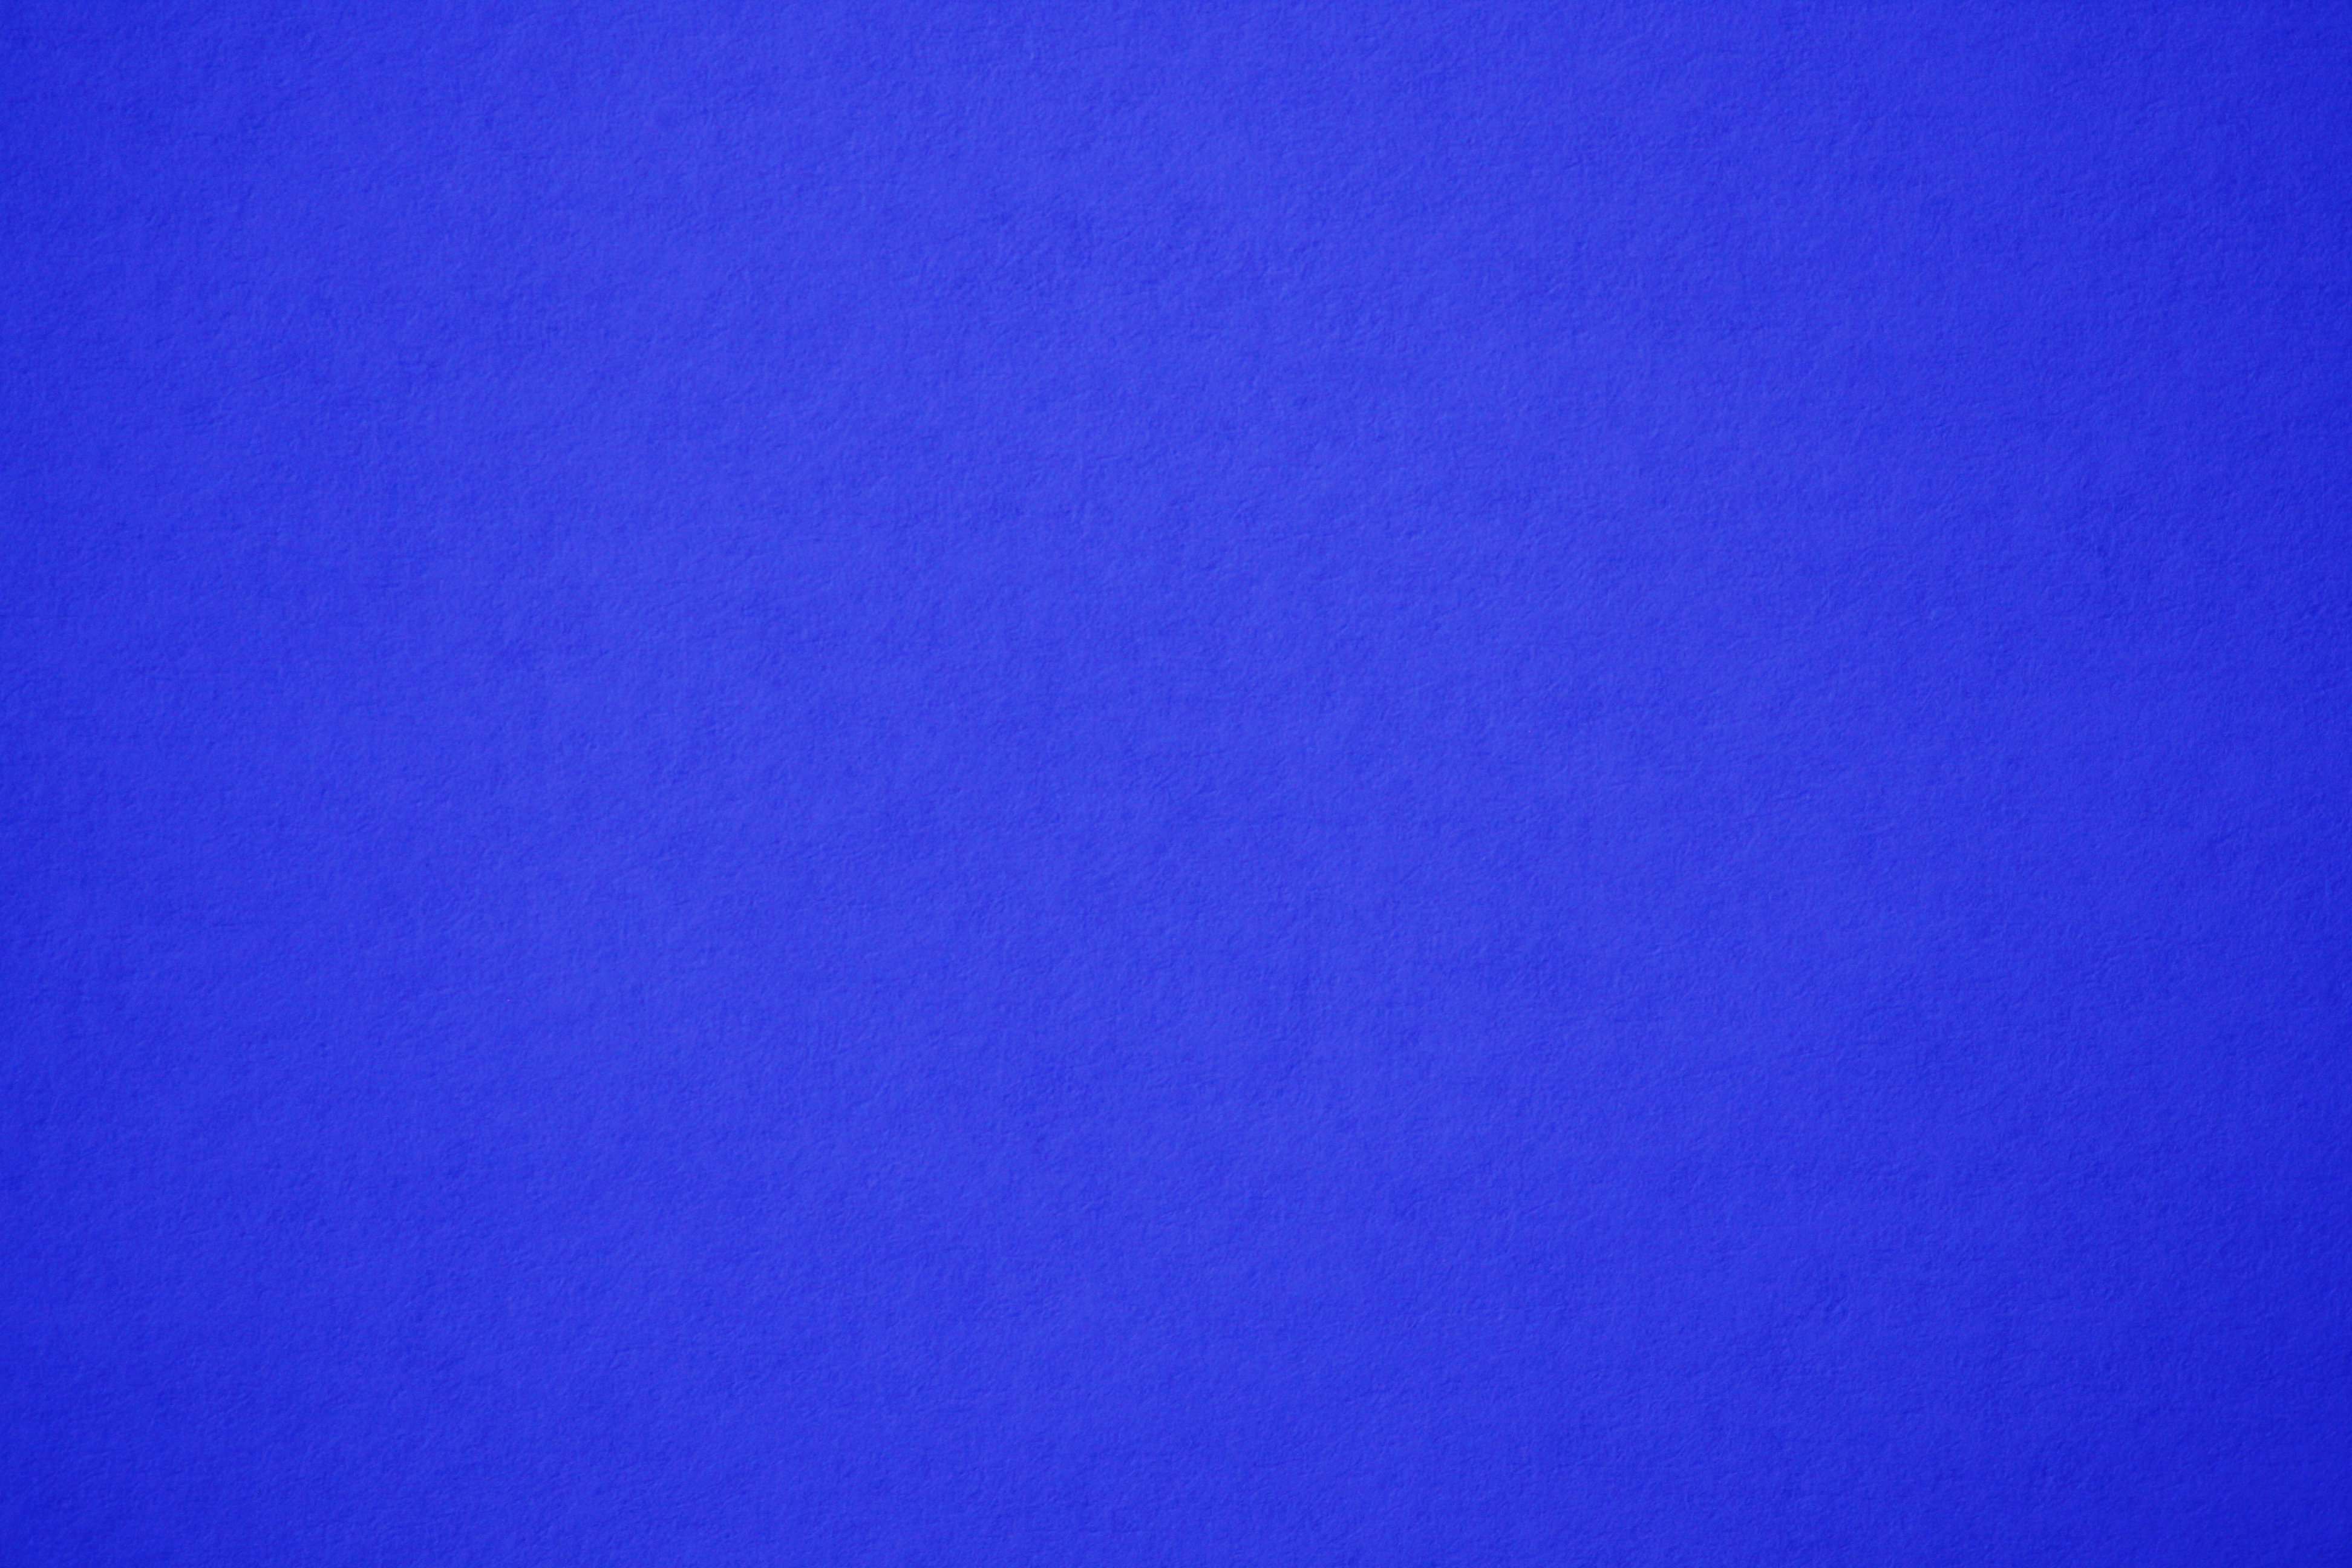 Blue Paper Texture Picture | Free Photograph | Photos Public Domain